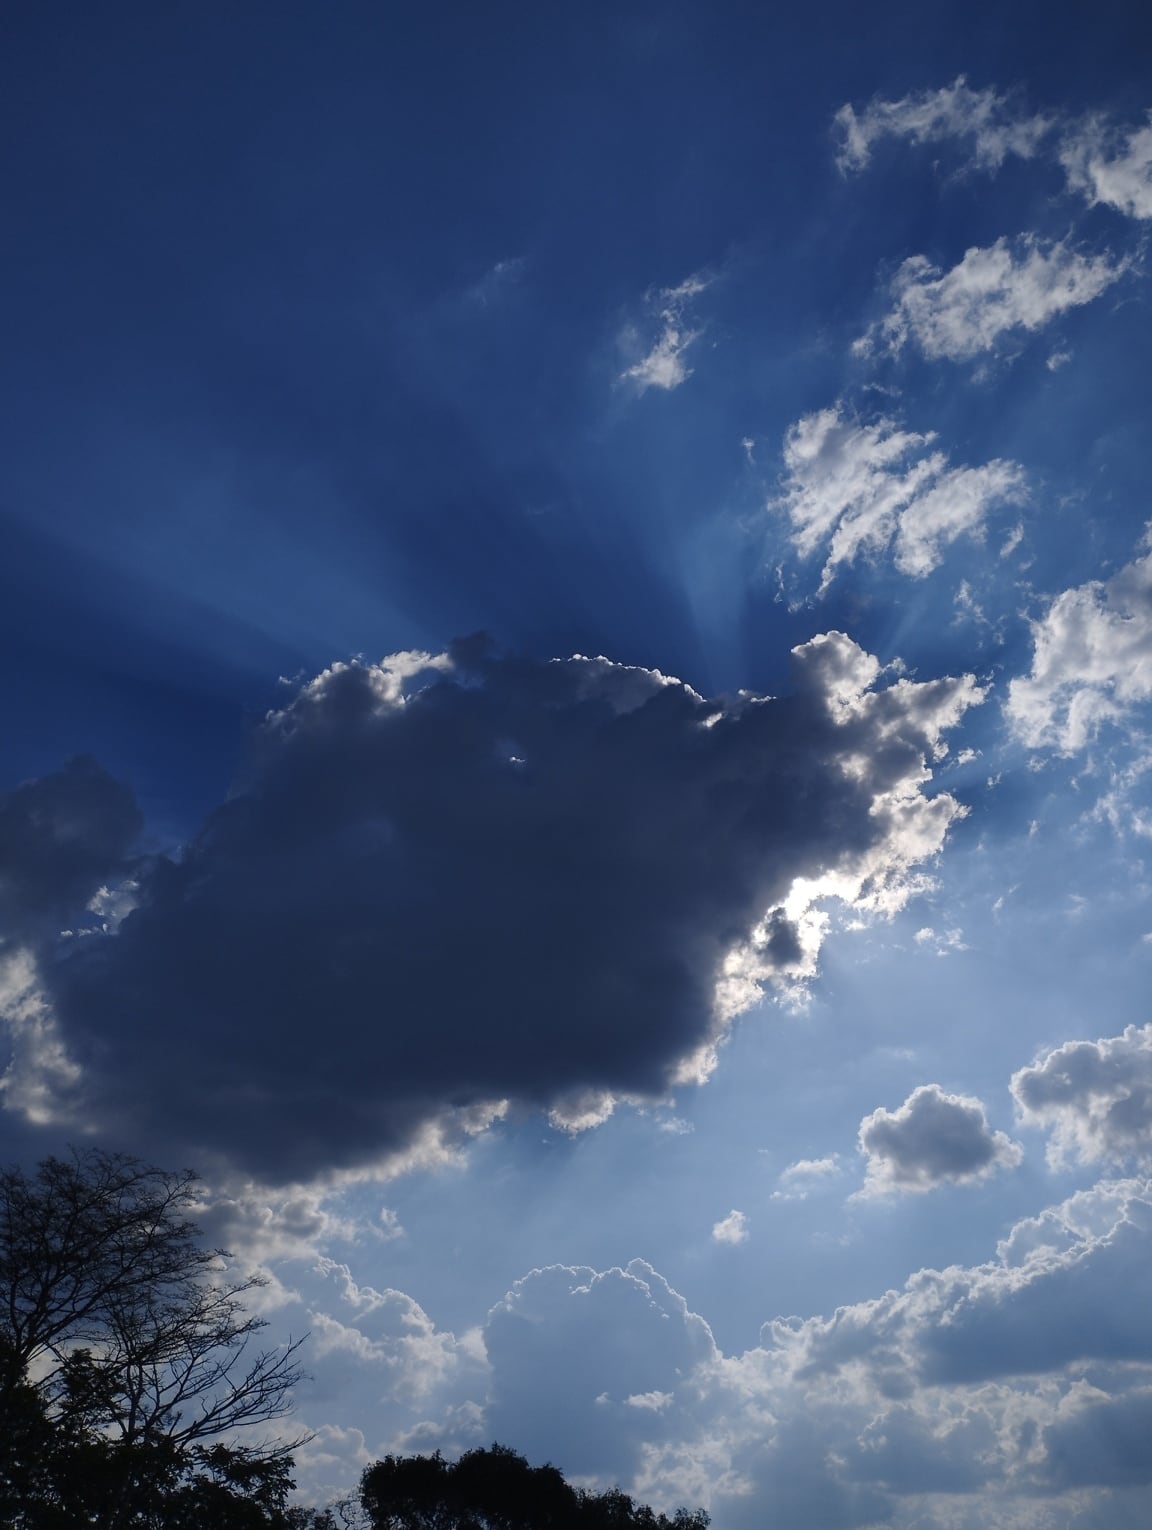 Hình ảnh miễn phí: Mặt trời chiếu qua những đám mây xanh thẫm trên bầu trời